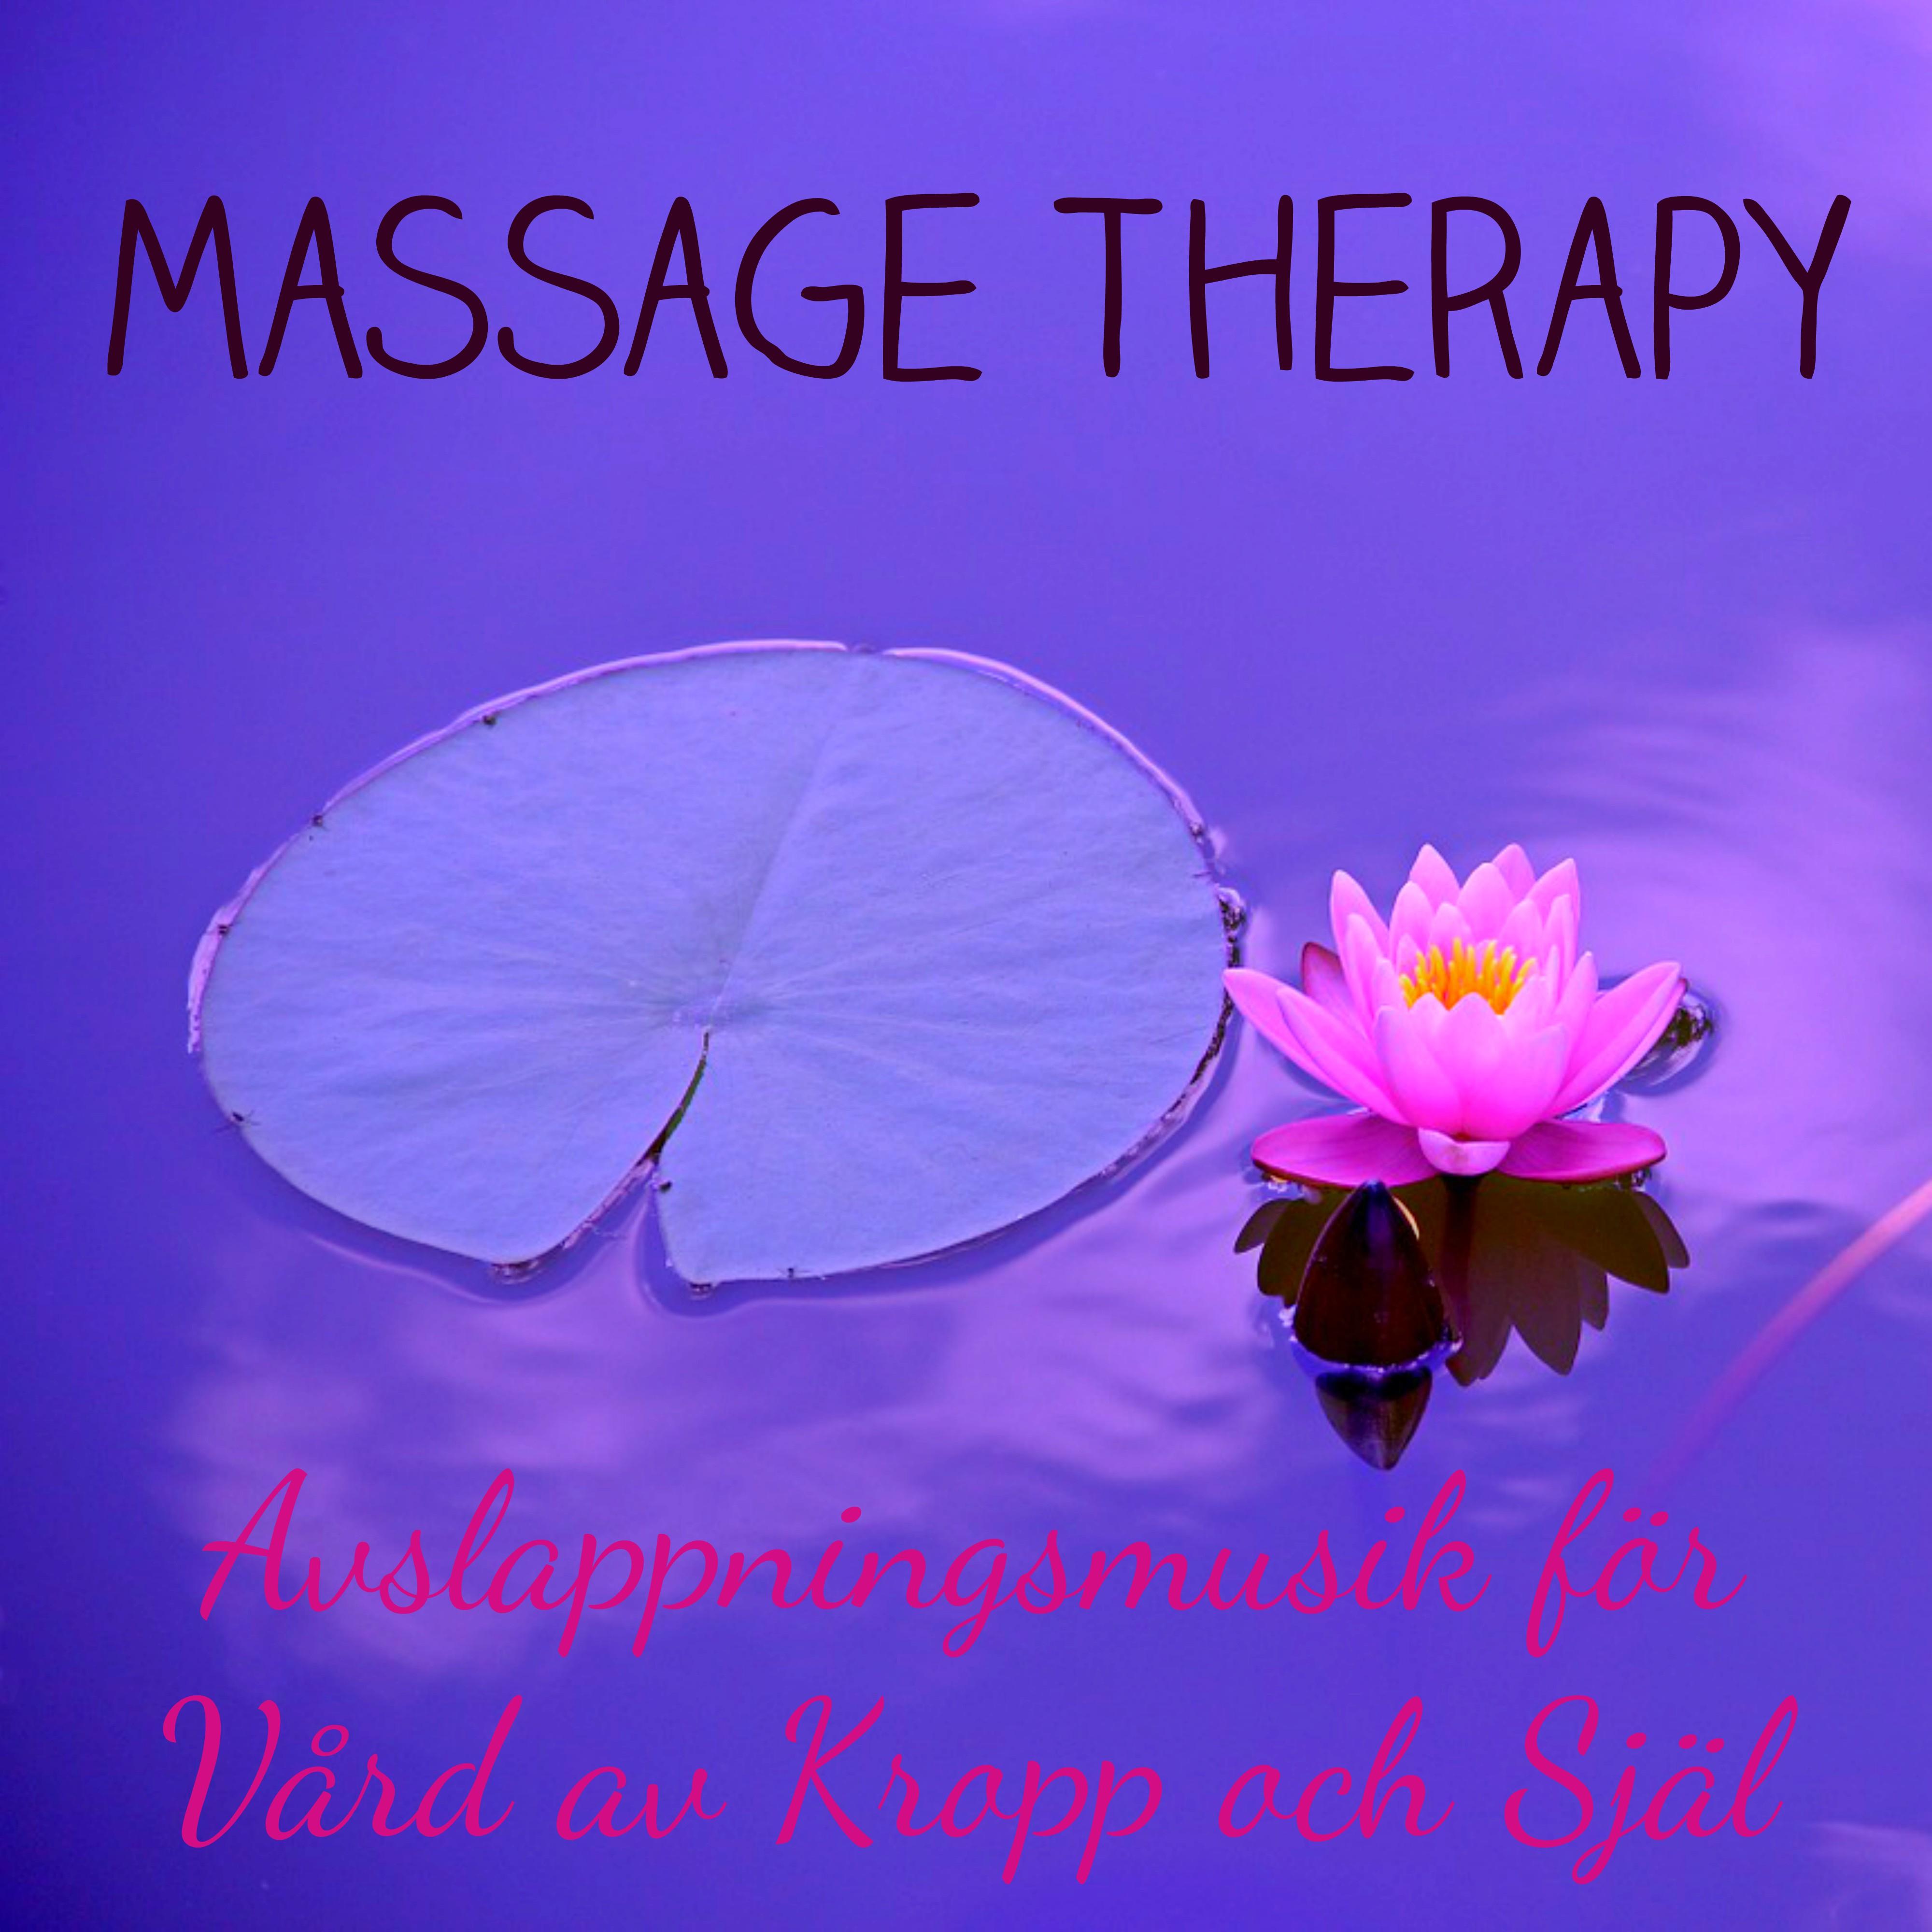 Massage Therapy  Avslappningsmusik, Naturljud och Instrumentala f r V rd av Kropp och Sj l